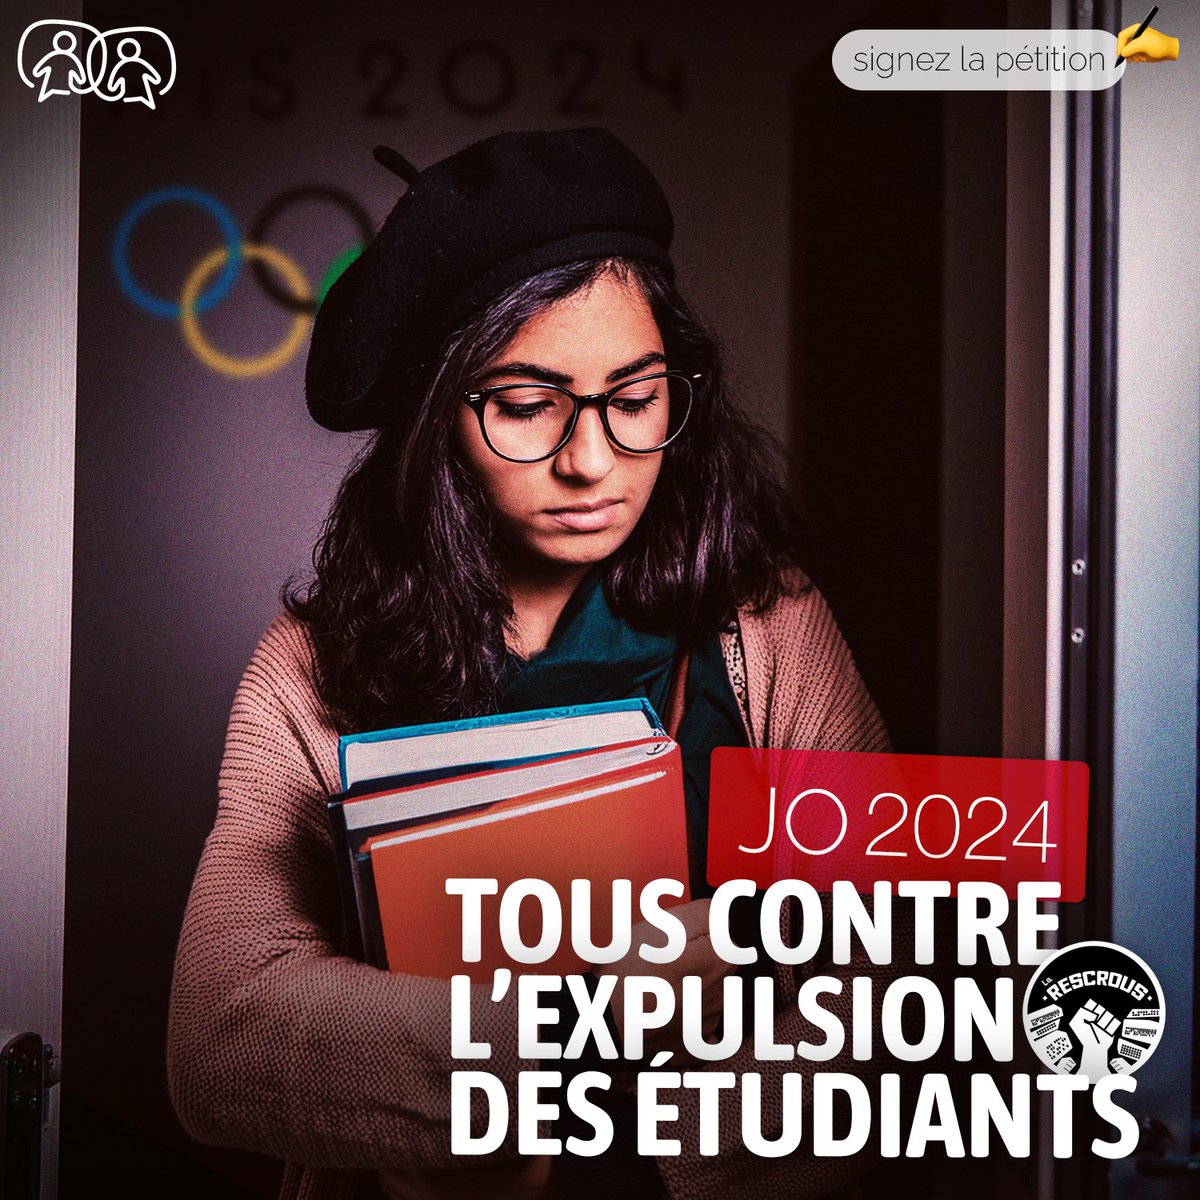 Des milliers d’#étudiants expulsés de leur résidence du #Crous pour le bien des #JO2024 ? Avec l’association @LaResCrous, demandez l’annulation de cette mesure insensée sans attendre ✊ Signez la pétition ➡️ mesops.com/LaRescrous ✍️ #mobilisation #Paris2024 #etudiant